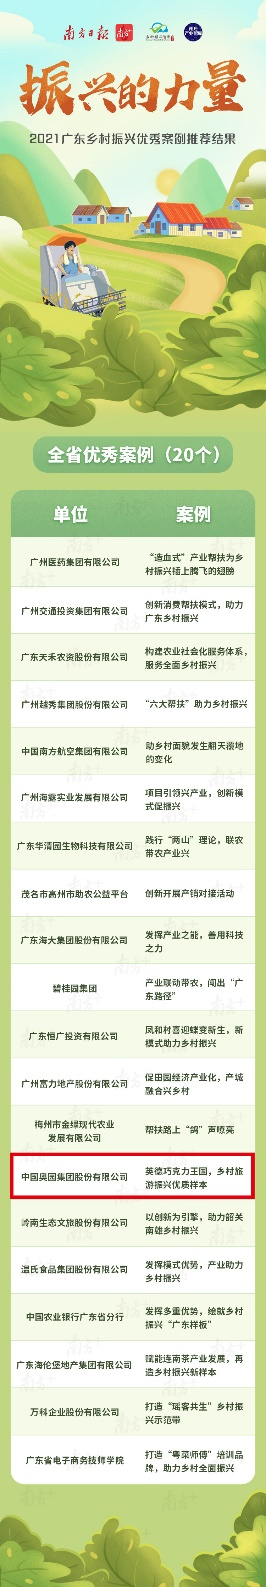 中国奥园获评“广东乡村振兴优秀案例”